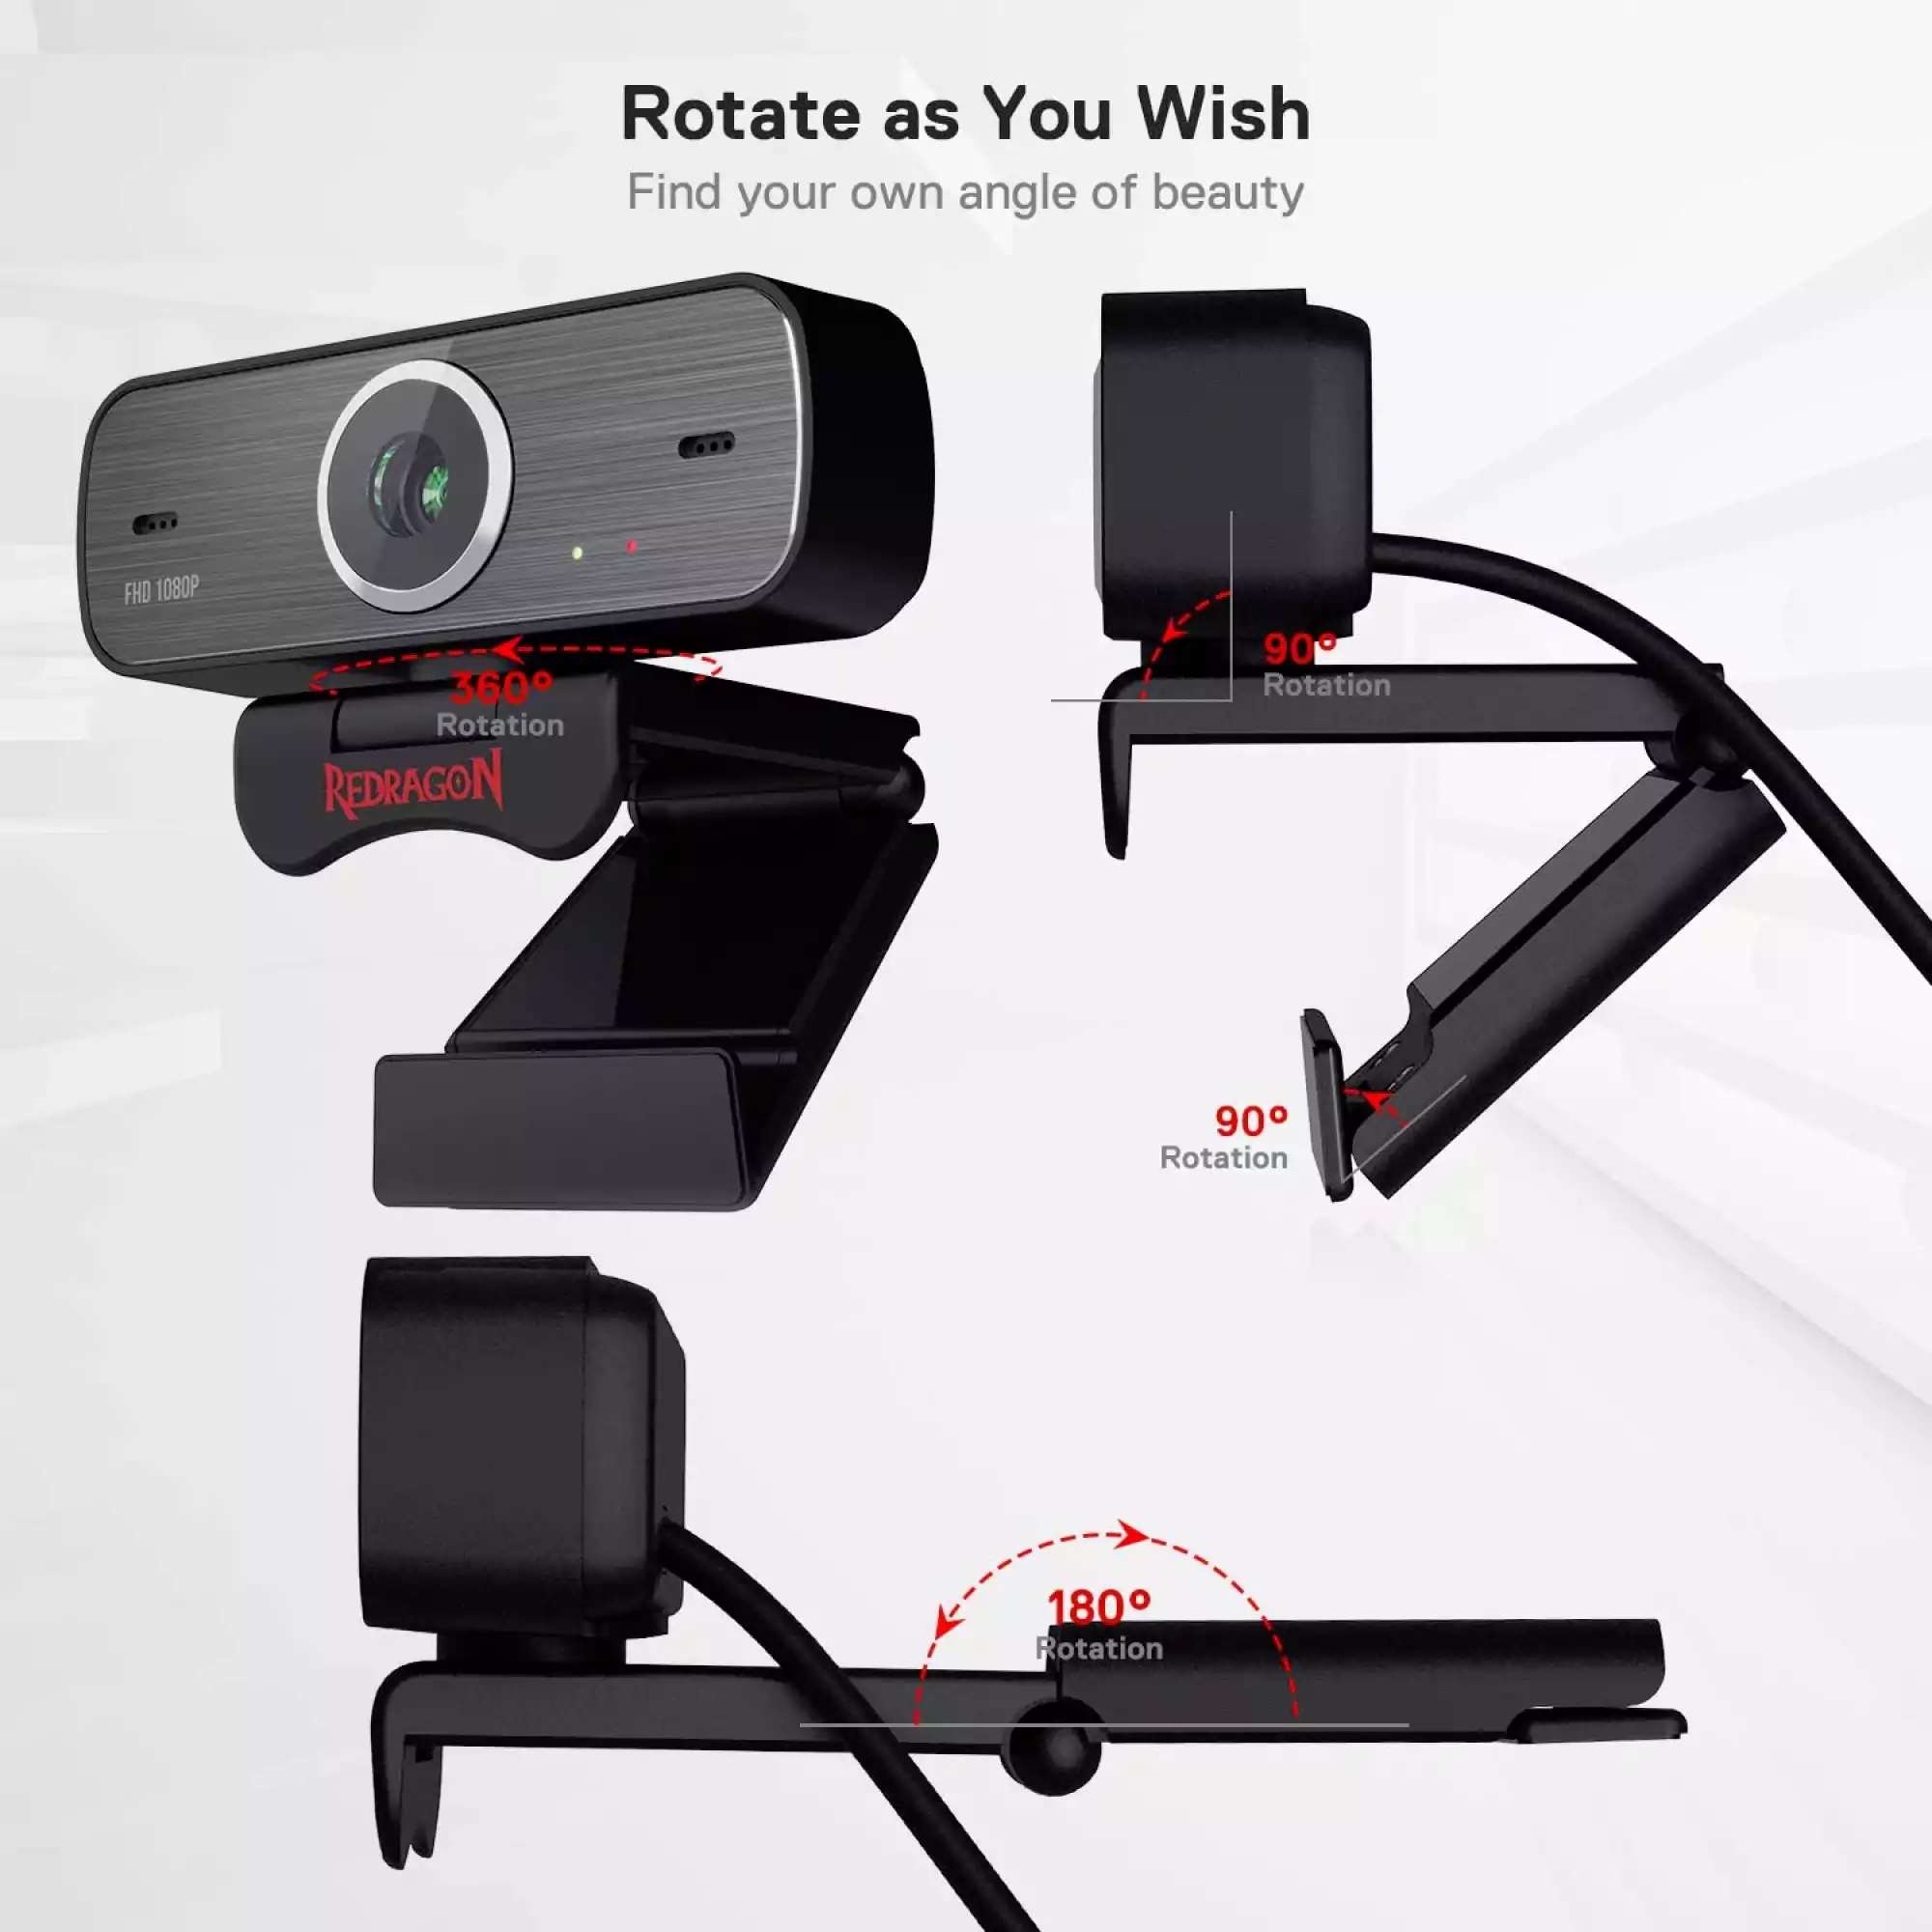 كاميرا ويب قابلة للدوران 360 درجة بميكروفون مزدوج مدمج ومنفذ USB 2 للسكايب والكمبيوتر هيتمان من ريدراجون GW800